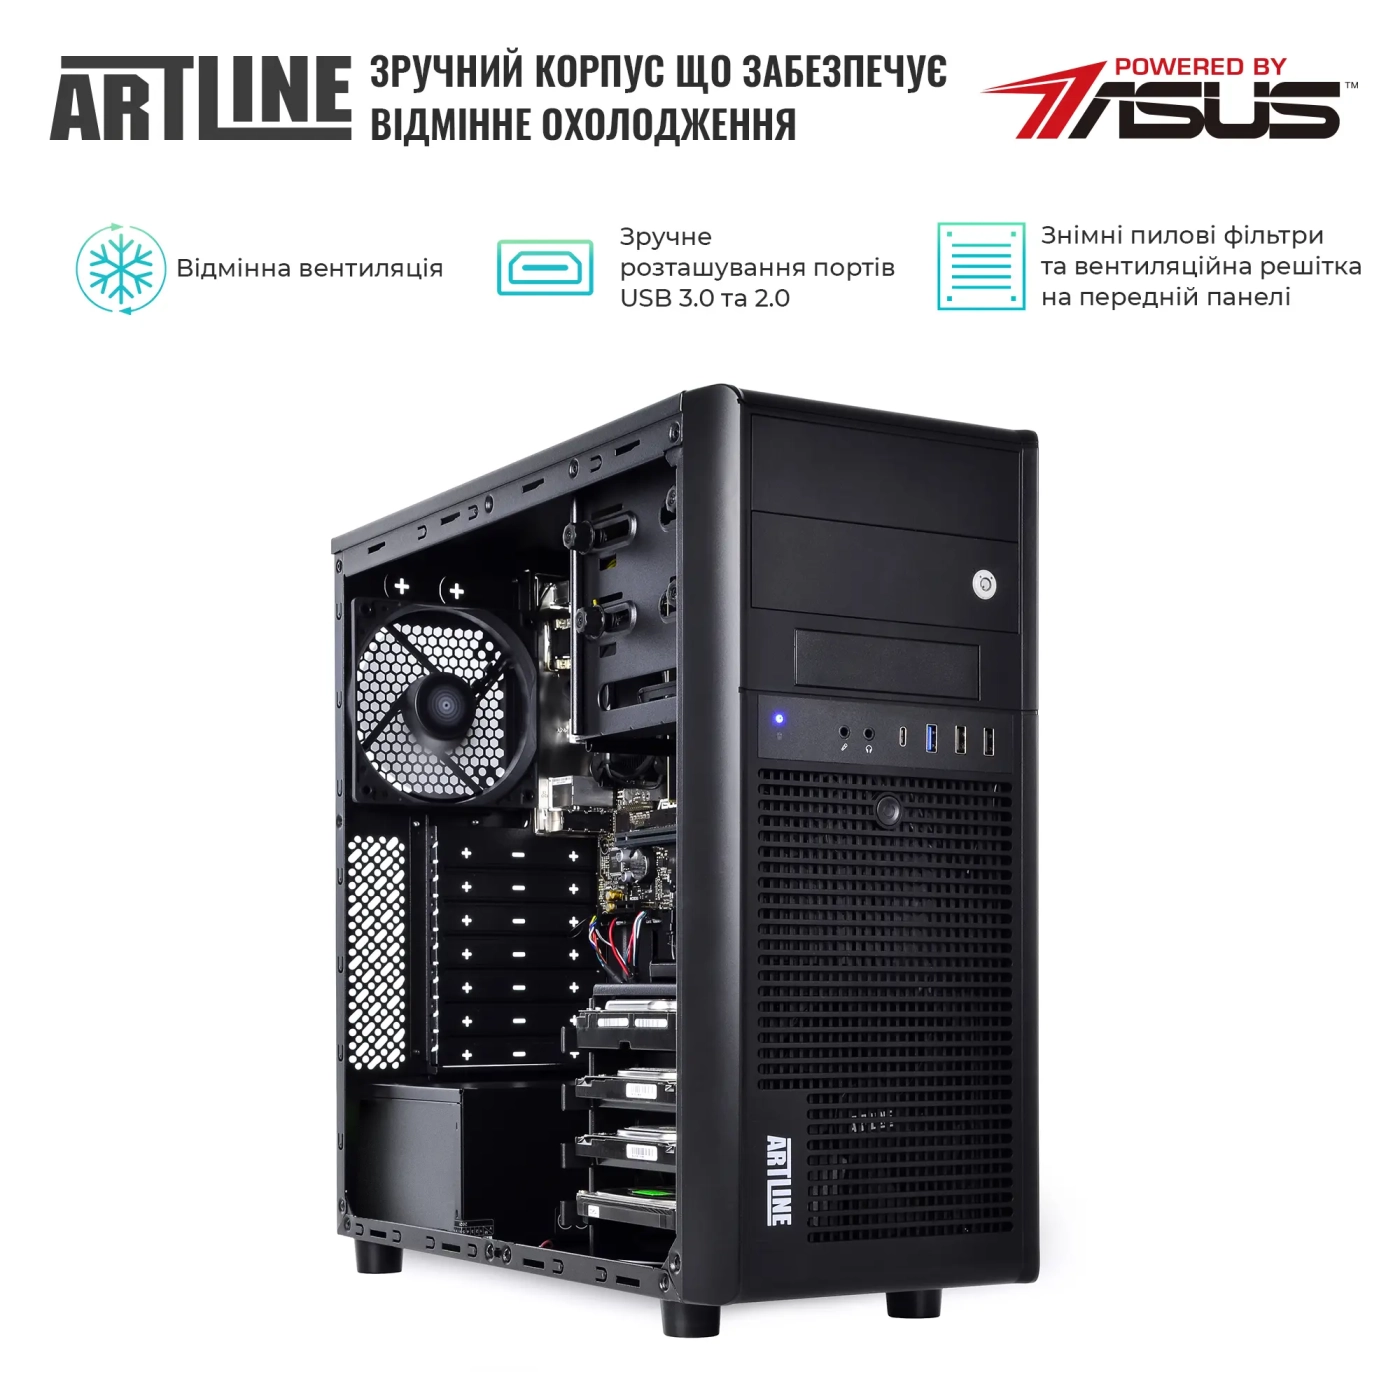 Купить Сервер ARTLINE Business T37v15 - фото 3